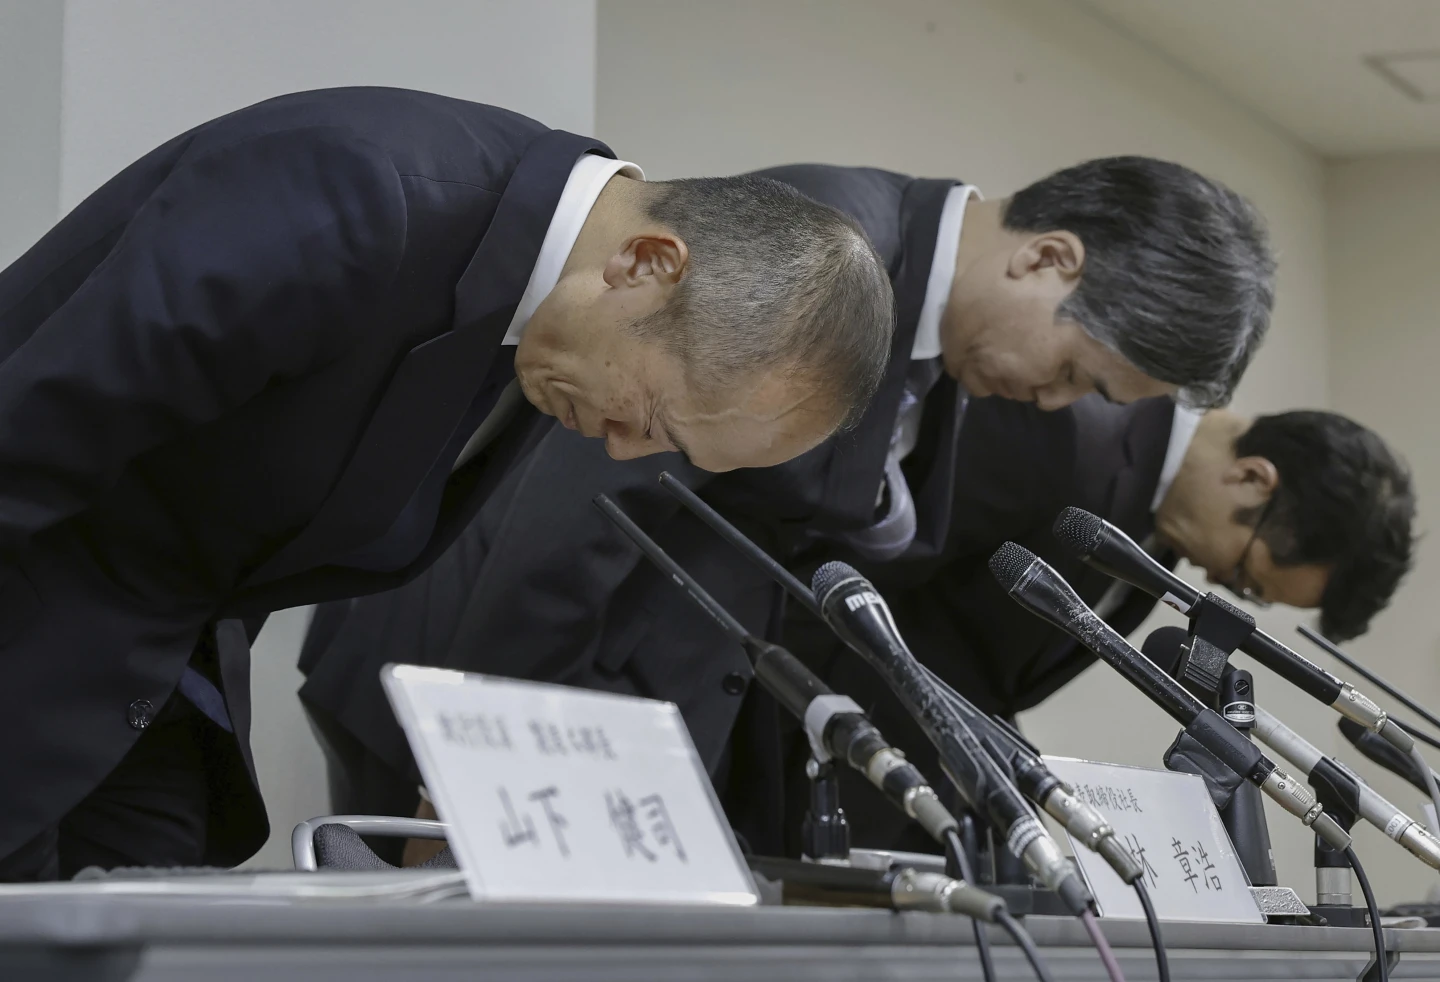 Se retira del mercado una pastilla suplementaria japonesa después de que dos personas murieran y más de 100 fueran hospitalizadas